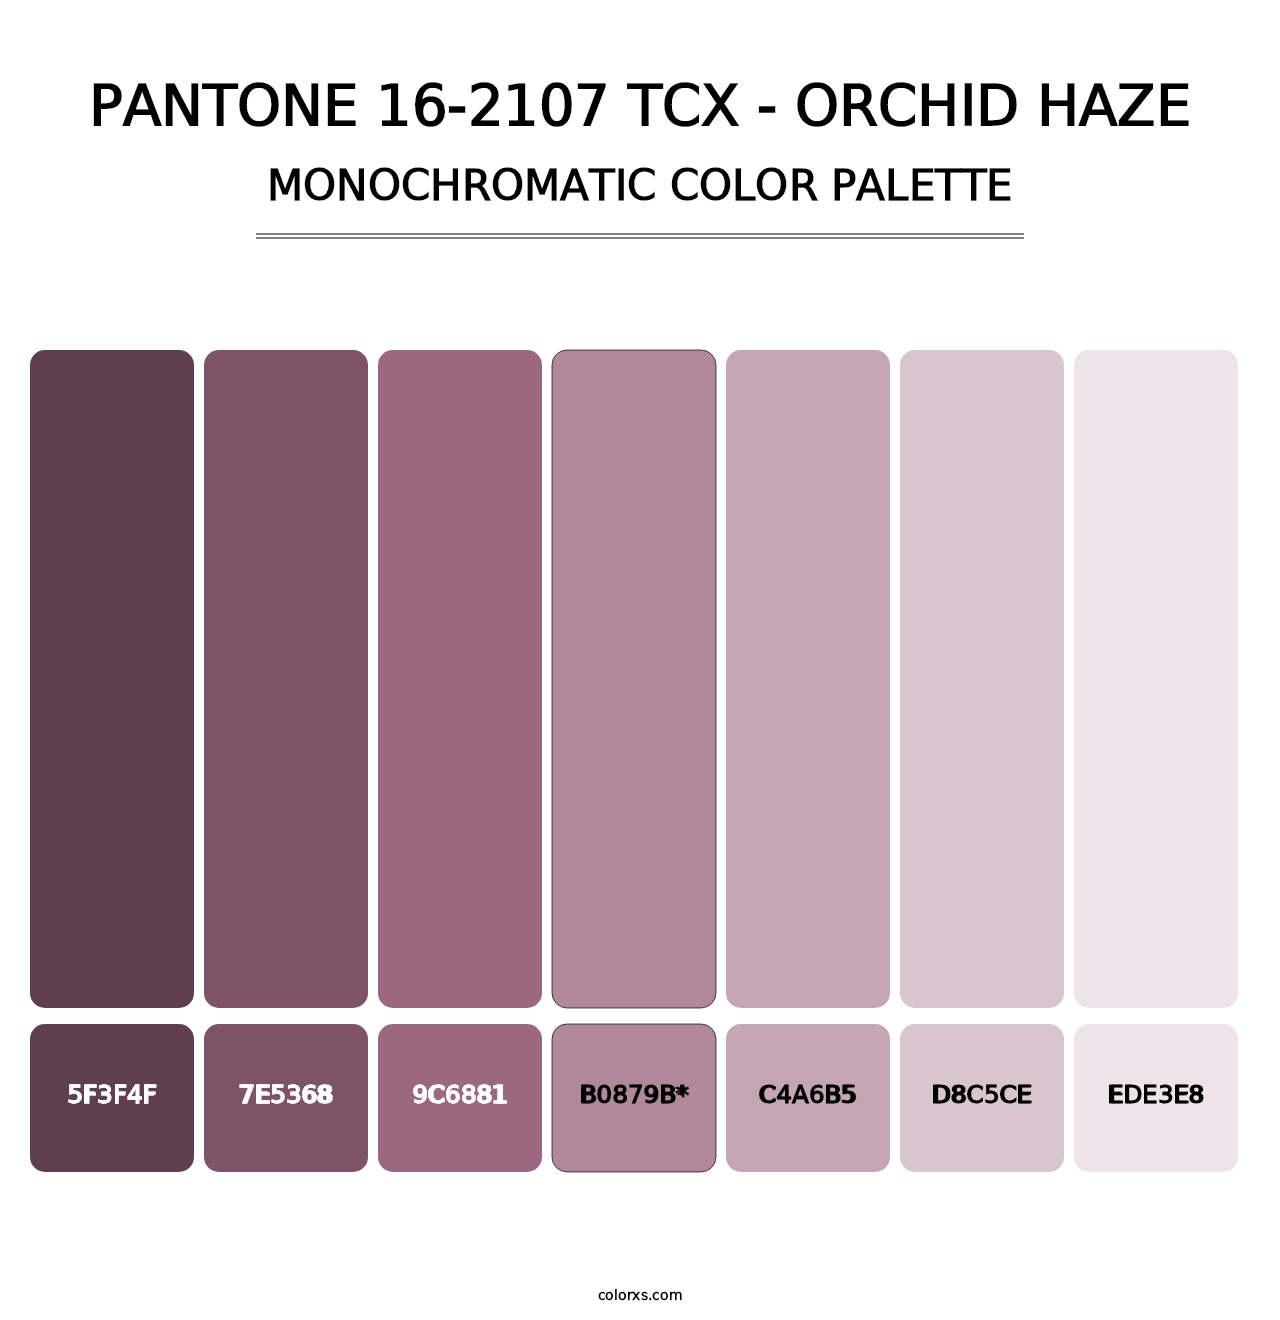 PANTONE 16-2107 TCX - Orchid Haze - Monochromatic Color Palette